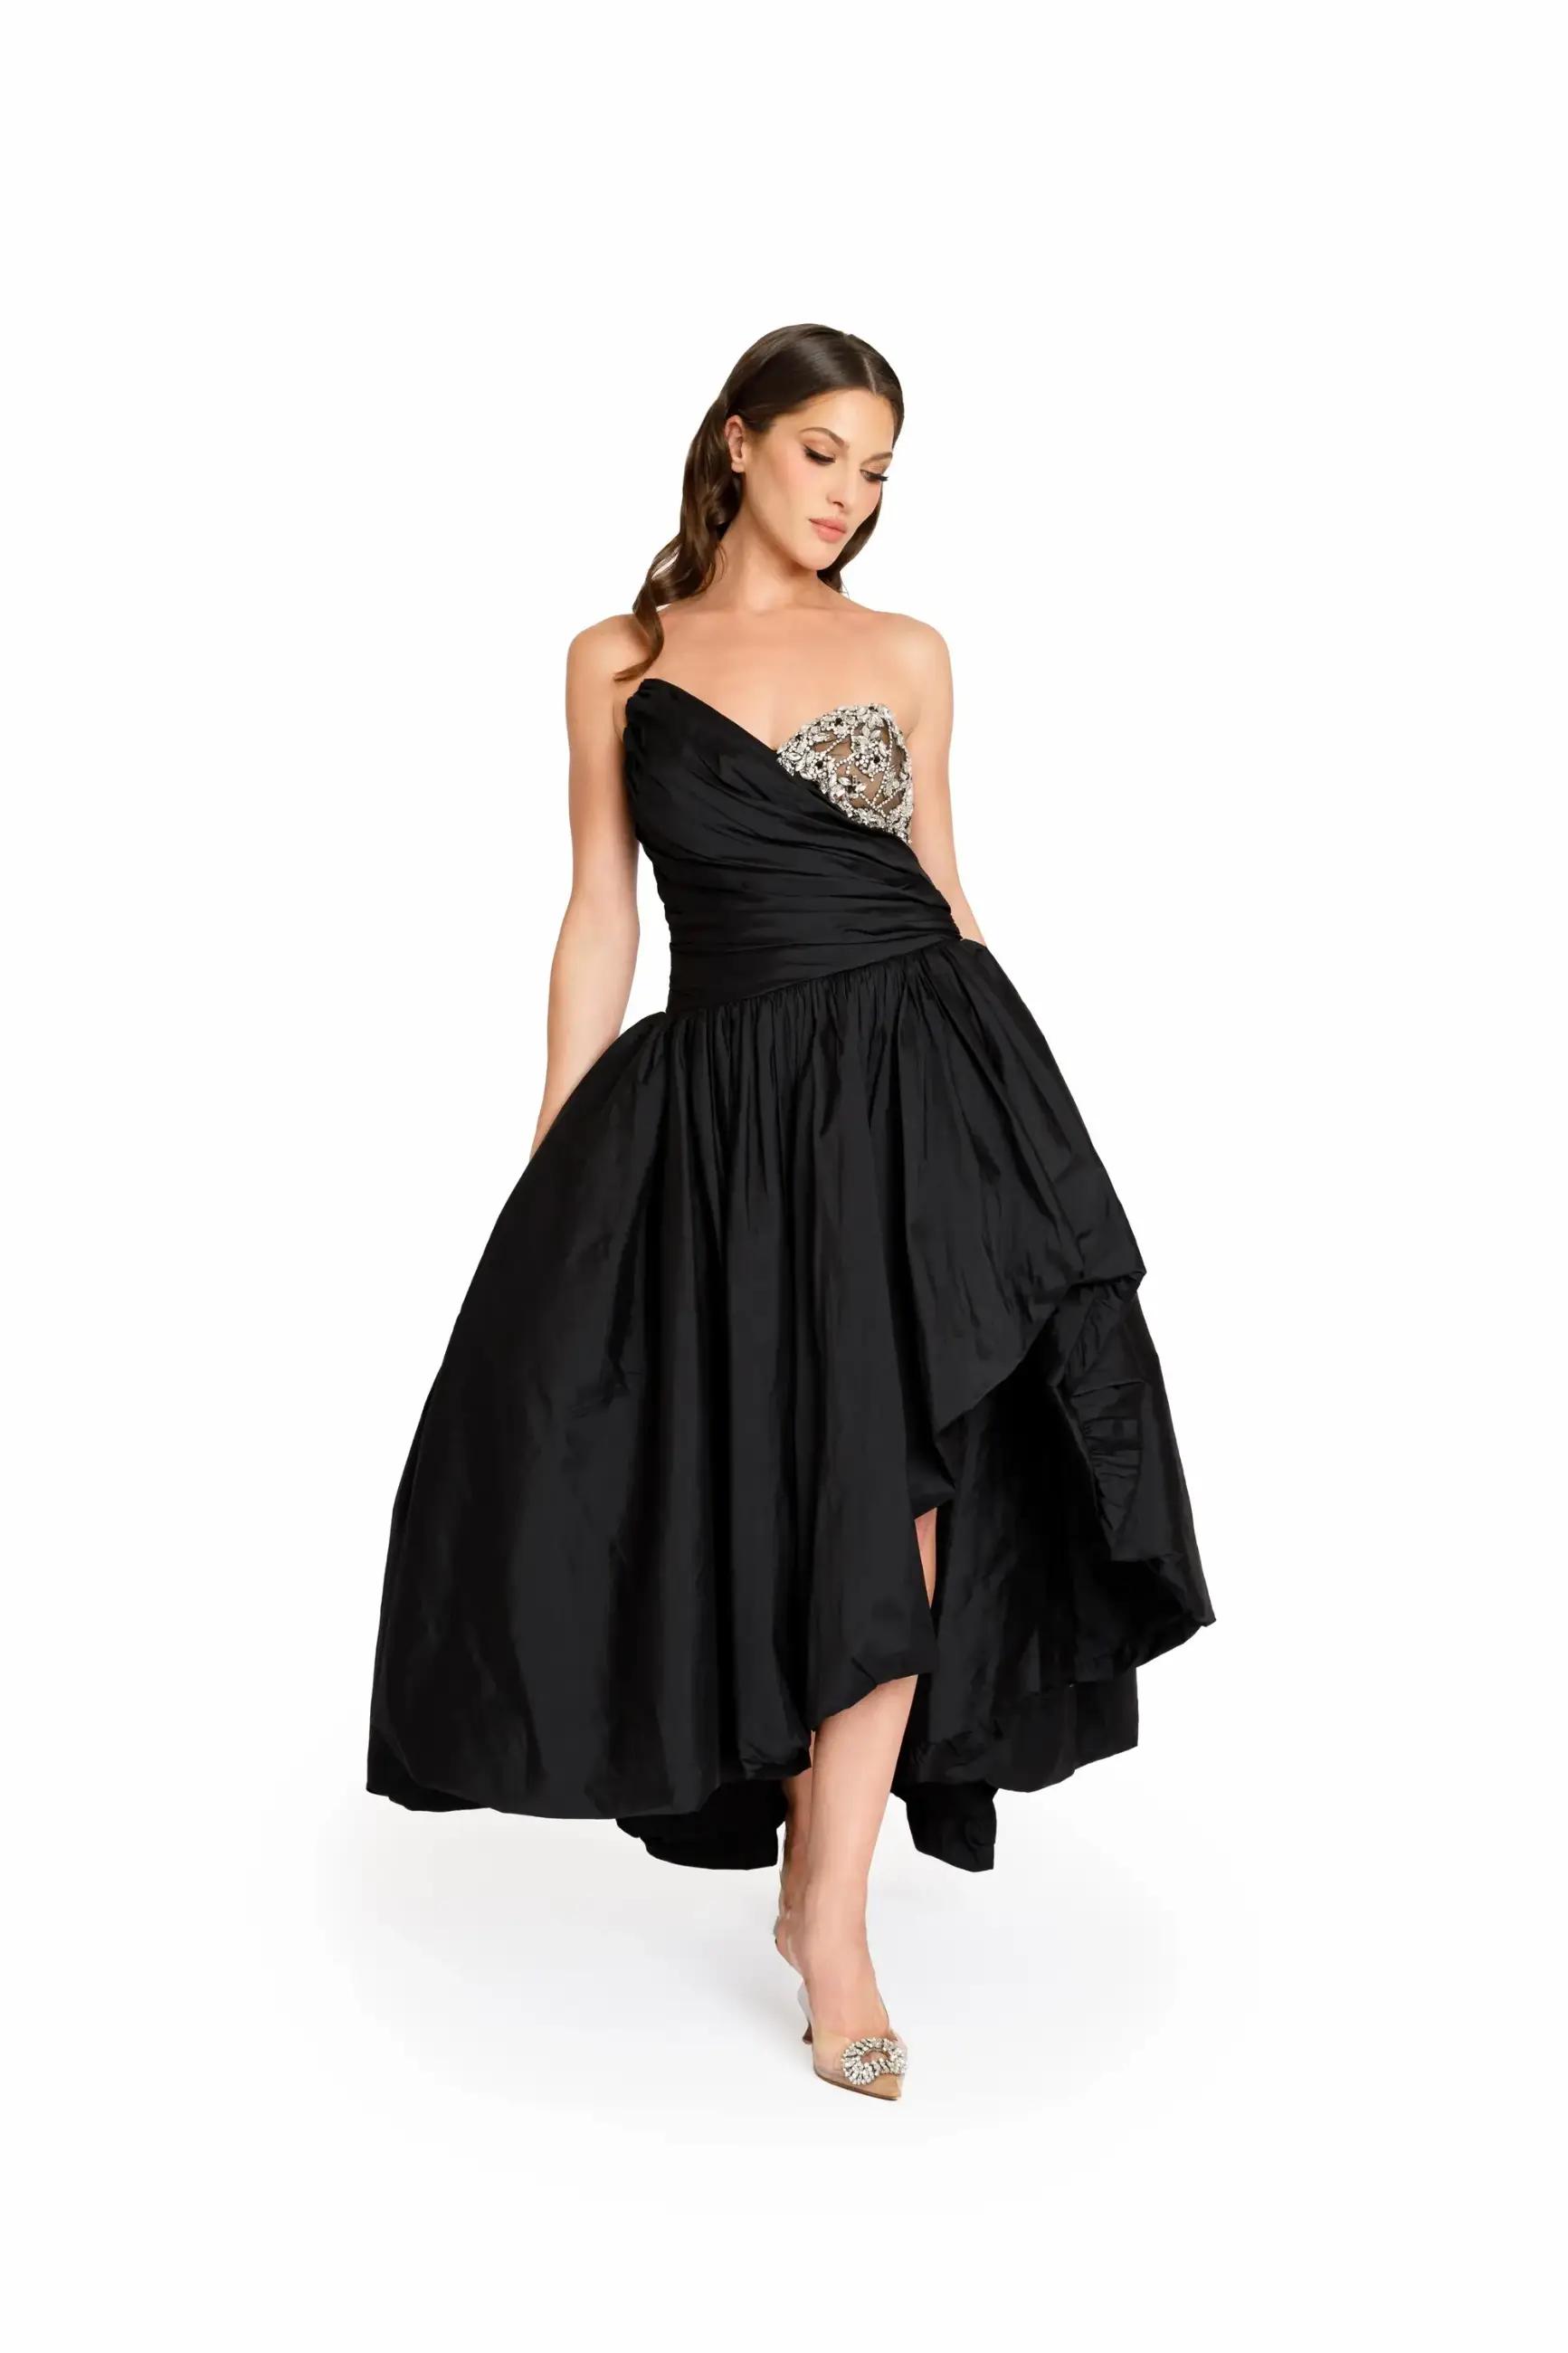 Model wearing a long black dress